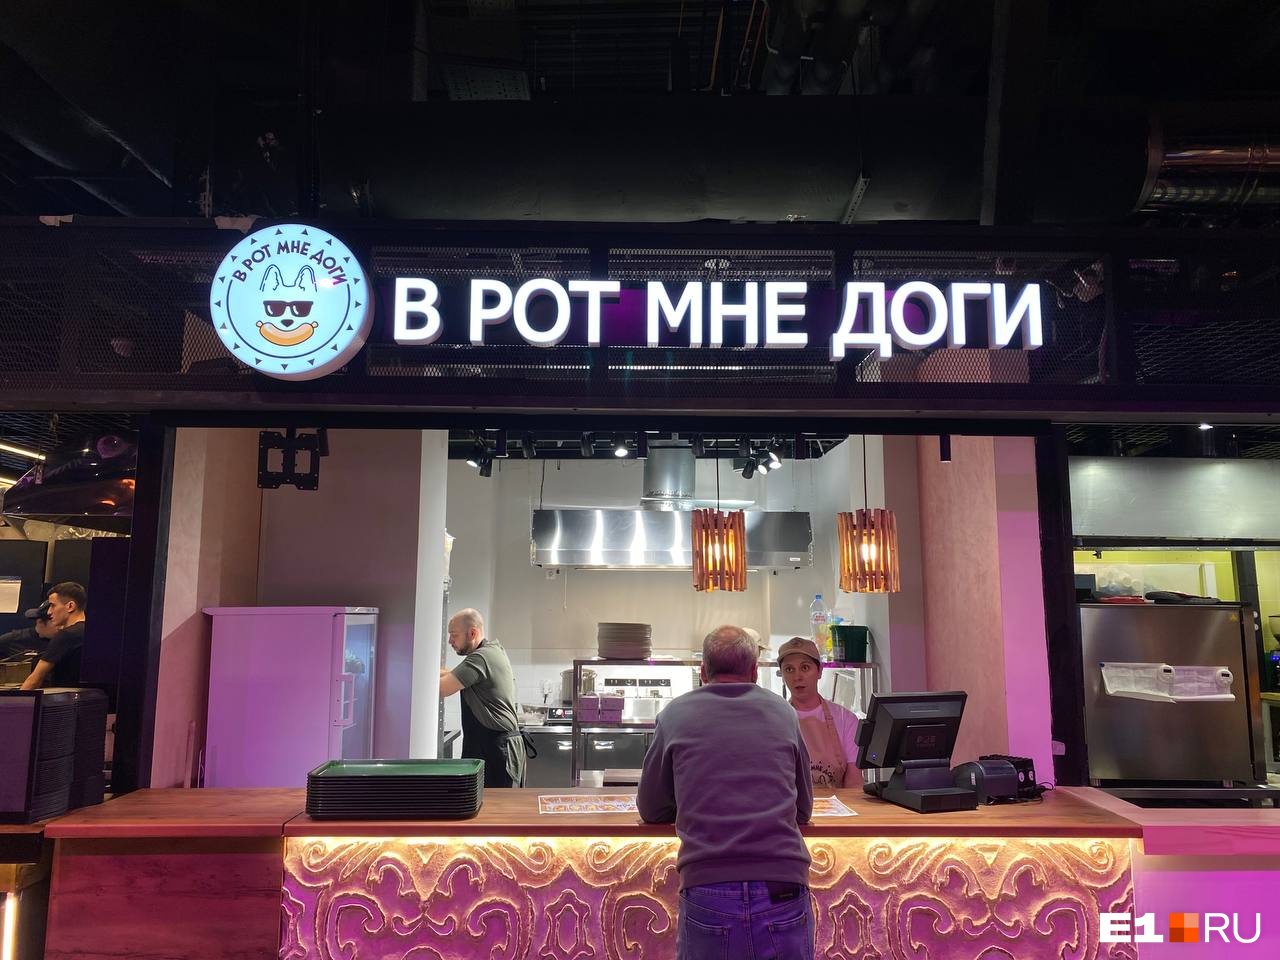 Полтысячи за штуку! В Екатеринбурге открылась закусочная с «золотыми» хот-догами